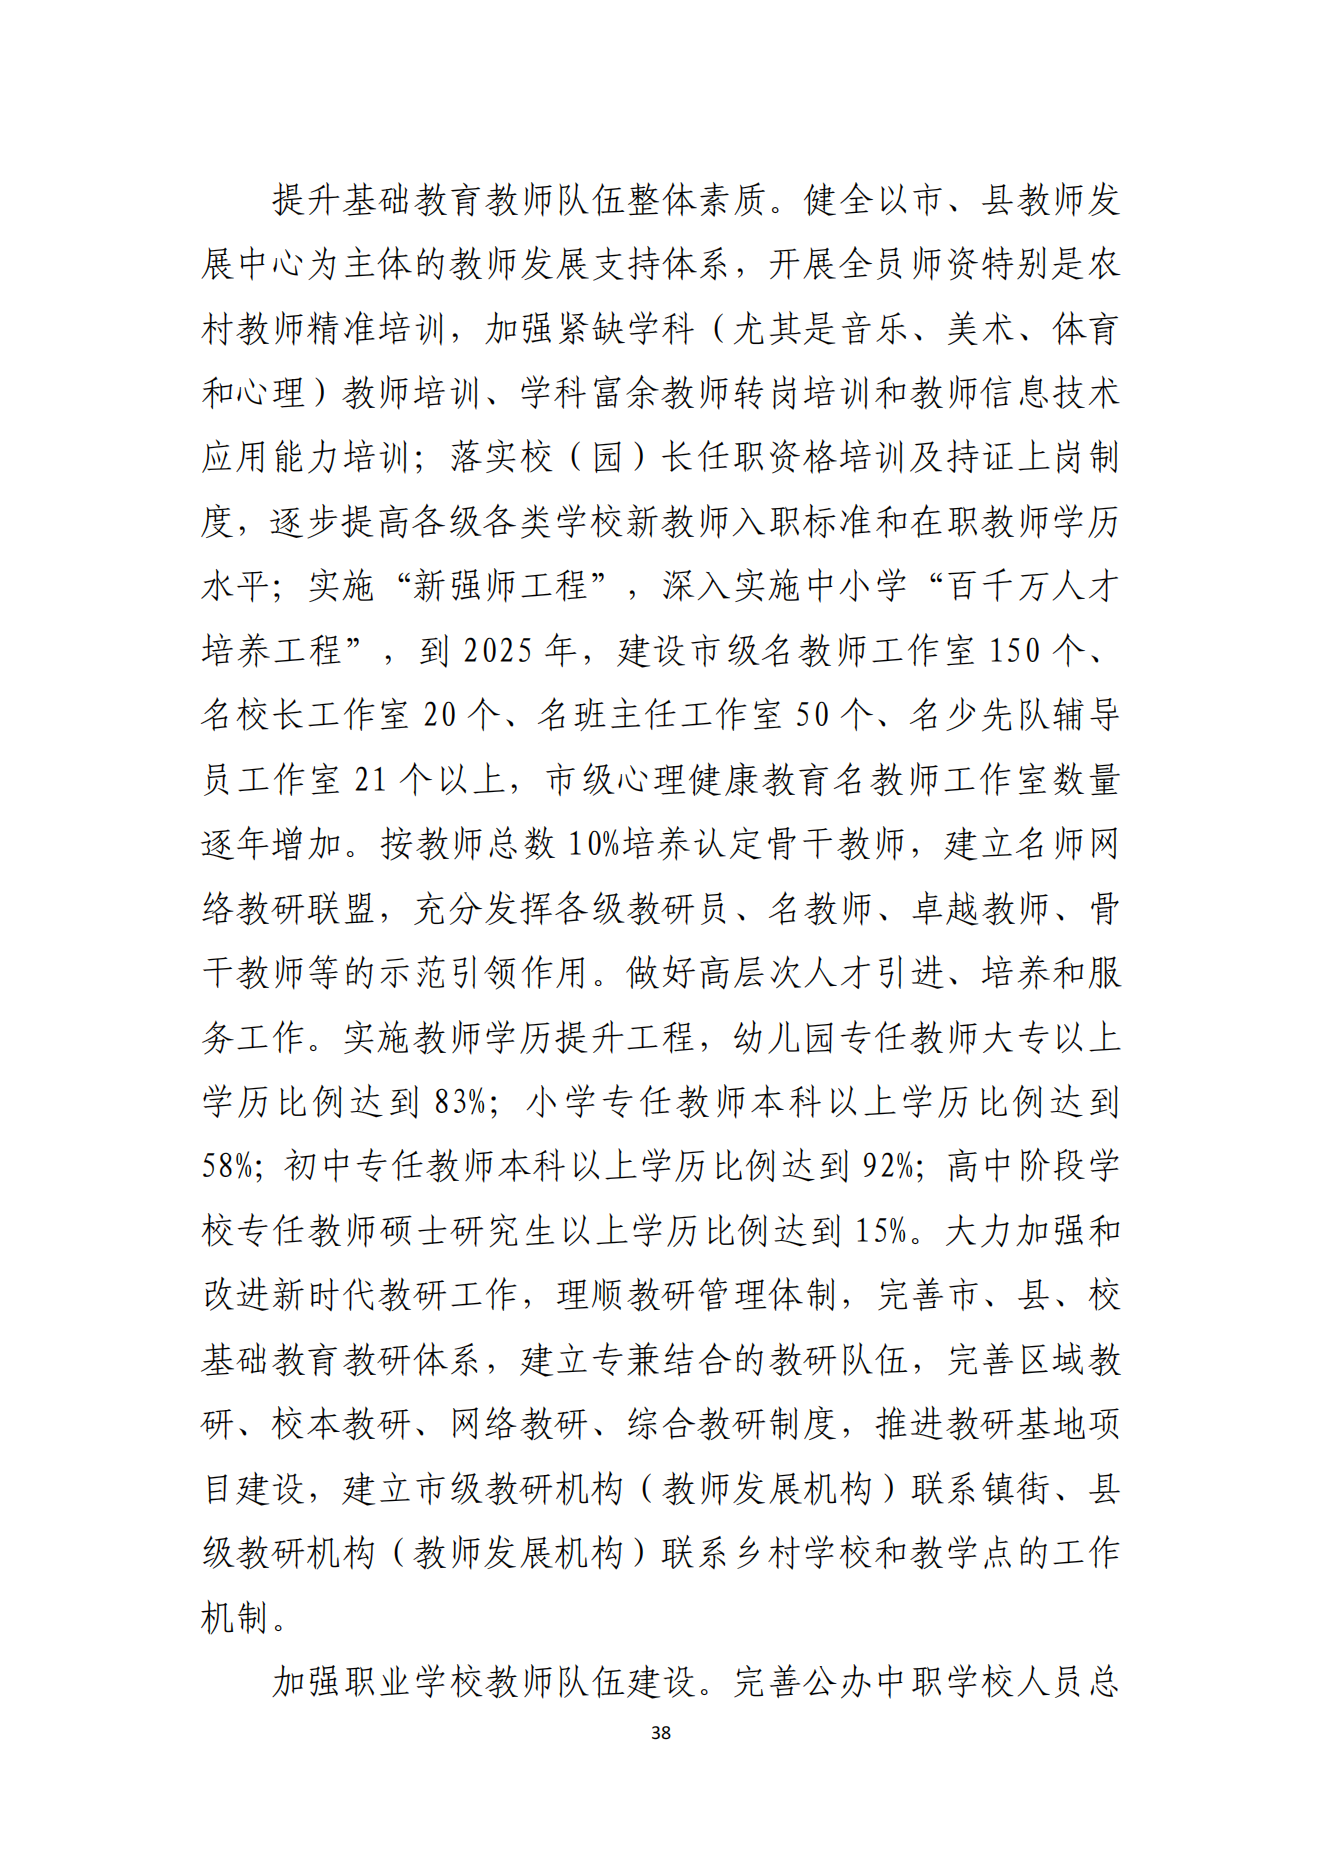 湛江市人民政府办公室关于印发湛江市教育发展“十四五”规划的通知_37.png